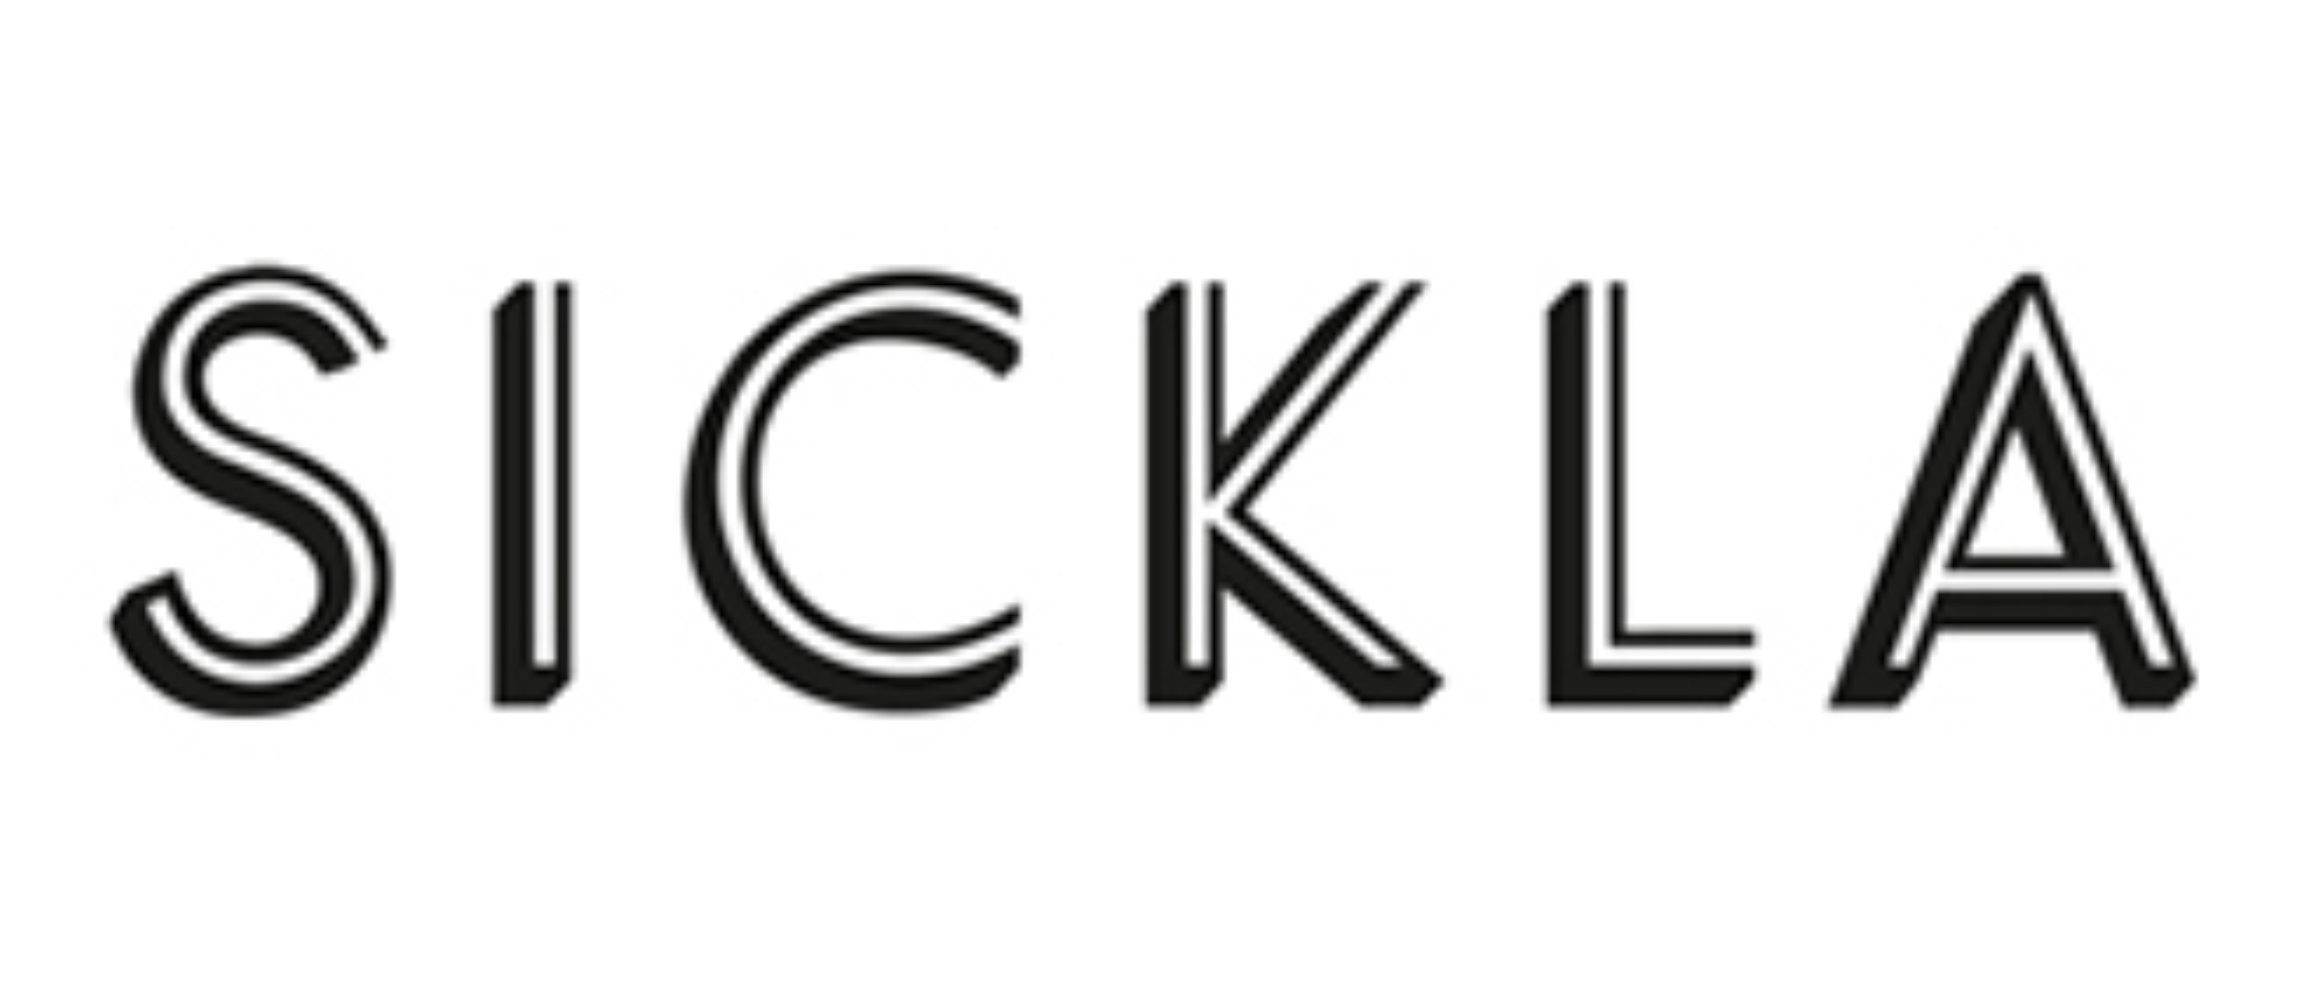 Sickla Logo2